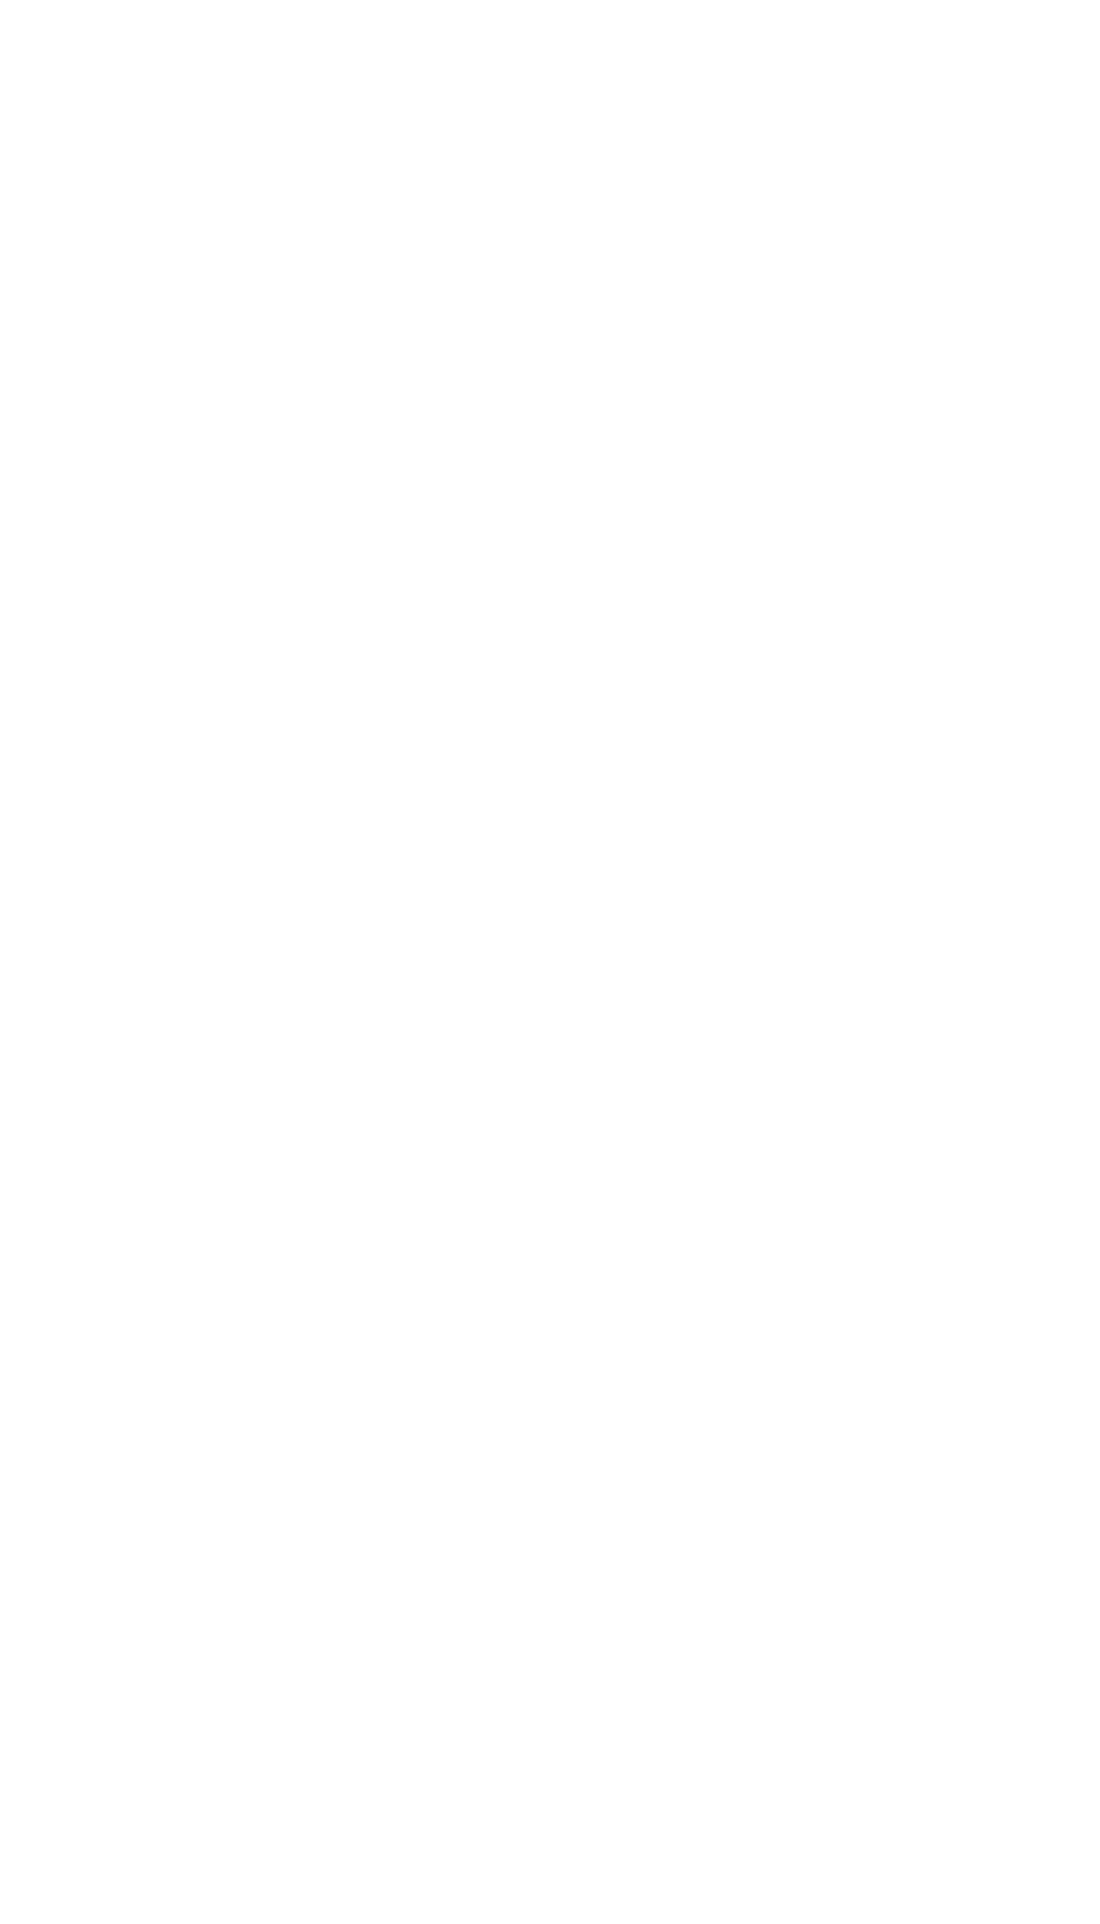 WSVS